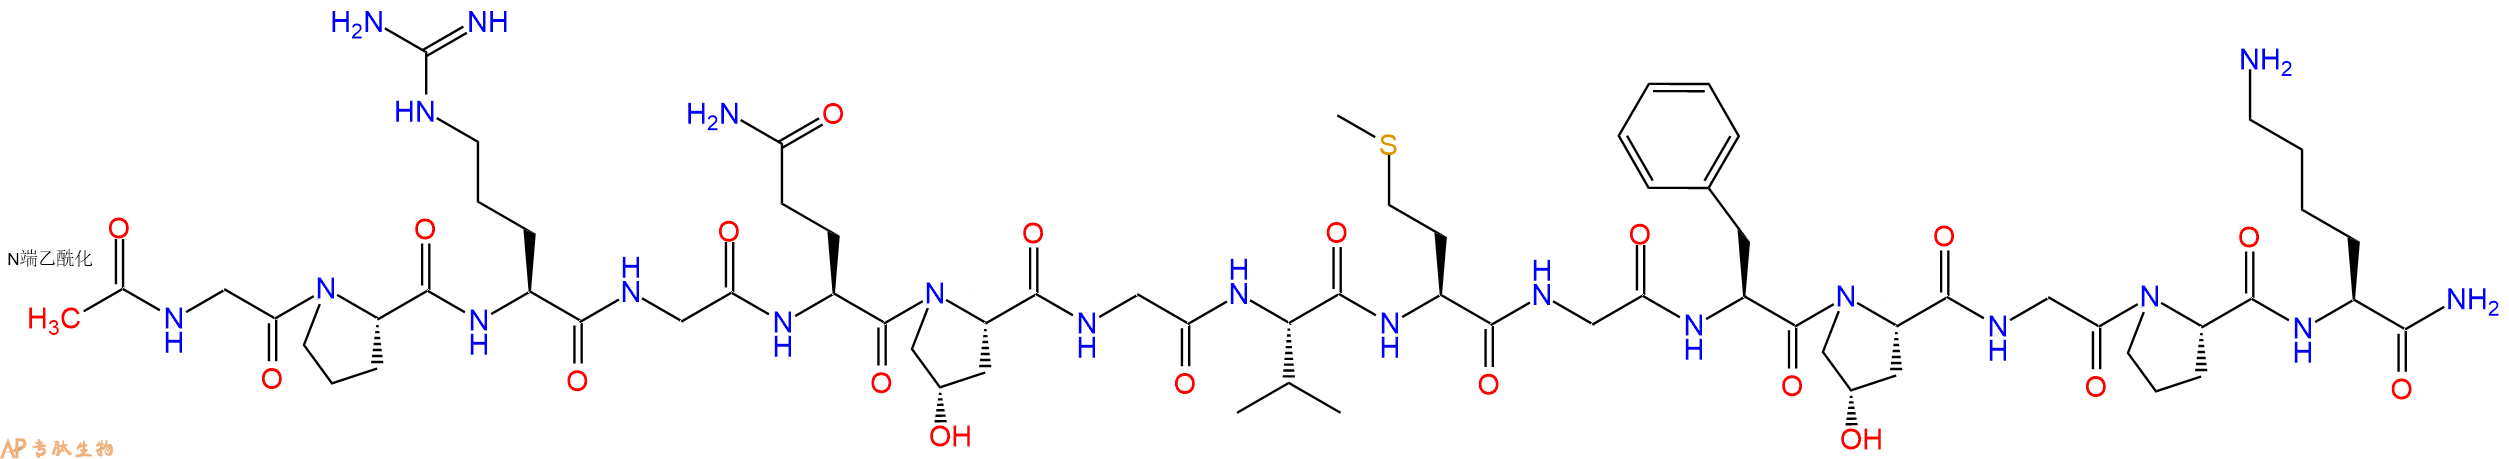 专肽生物产品Ac-Gly-Pro-Arg-Gly-Gln-Hyp-Gly-Val-Met-Gly-Phe-Hyp-Gly-Pro-Lys-NH2